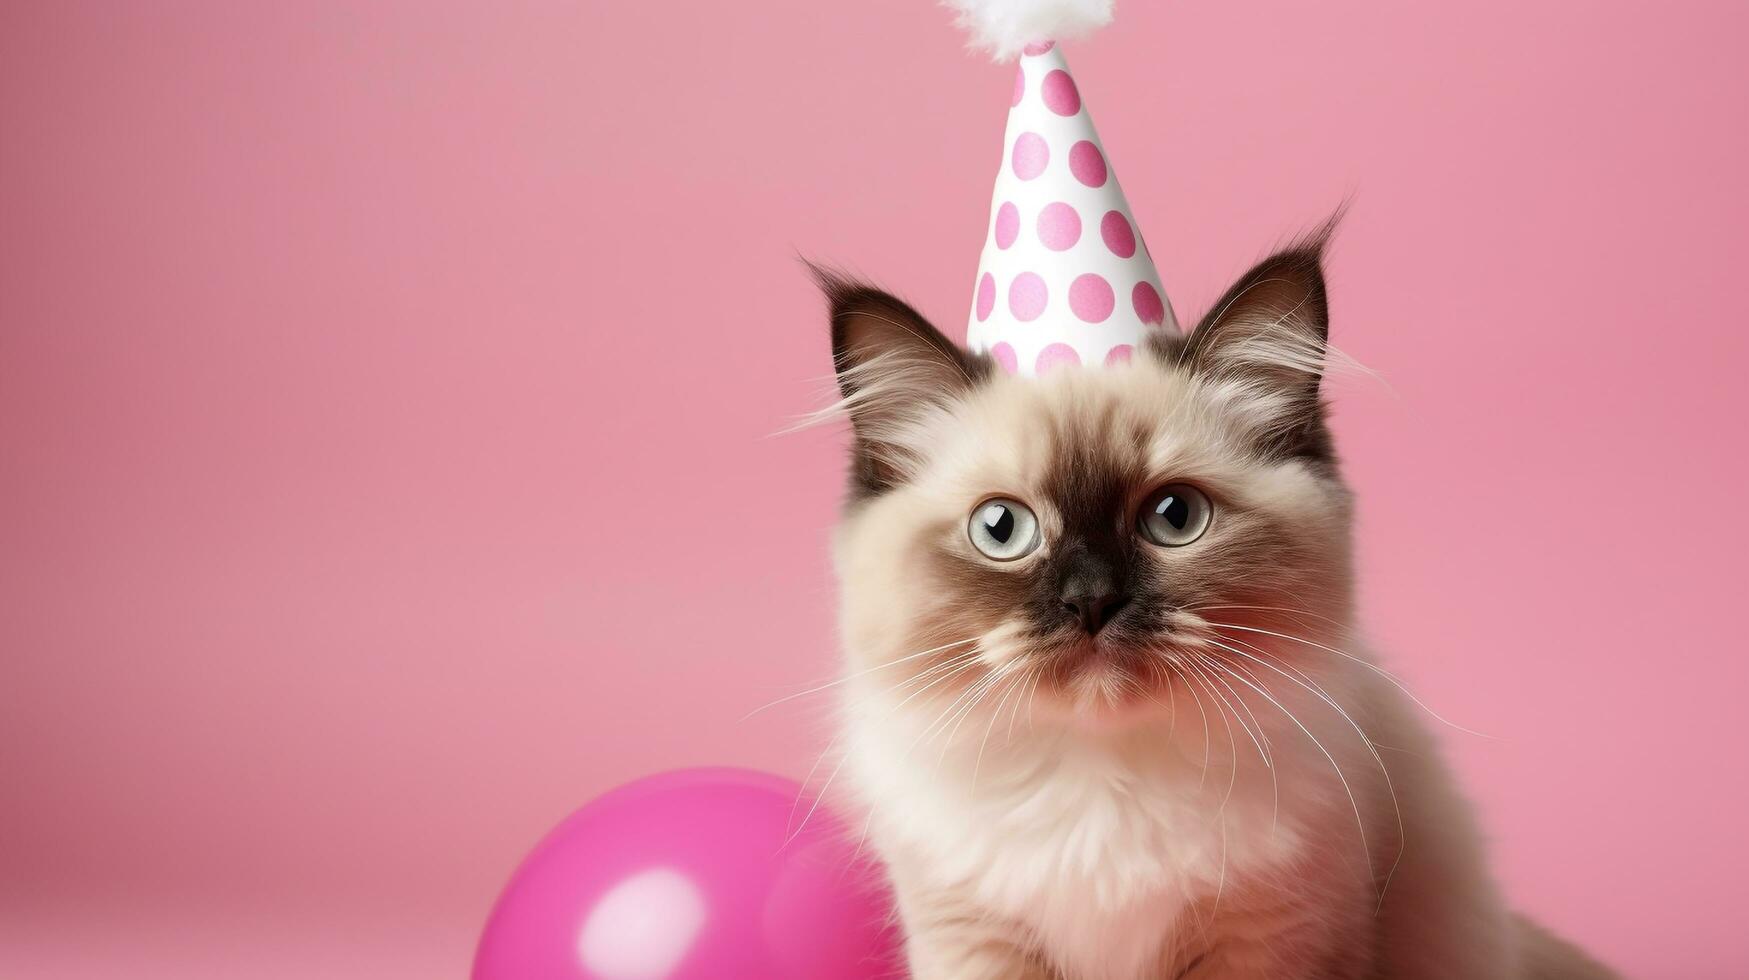 süß Katze mit Kegel Hut und Halskette Krawatte auf isoliert hintergrund.glücklich Geburtstag Konzept.erstellt mit generativ ai Technologie foto